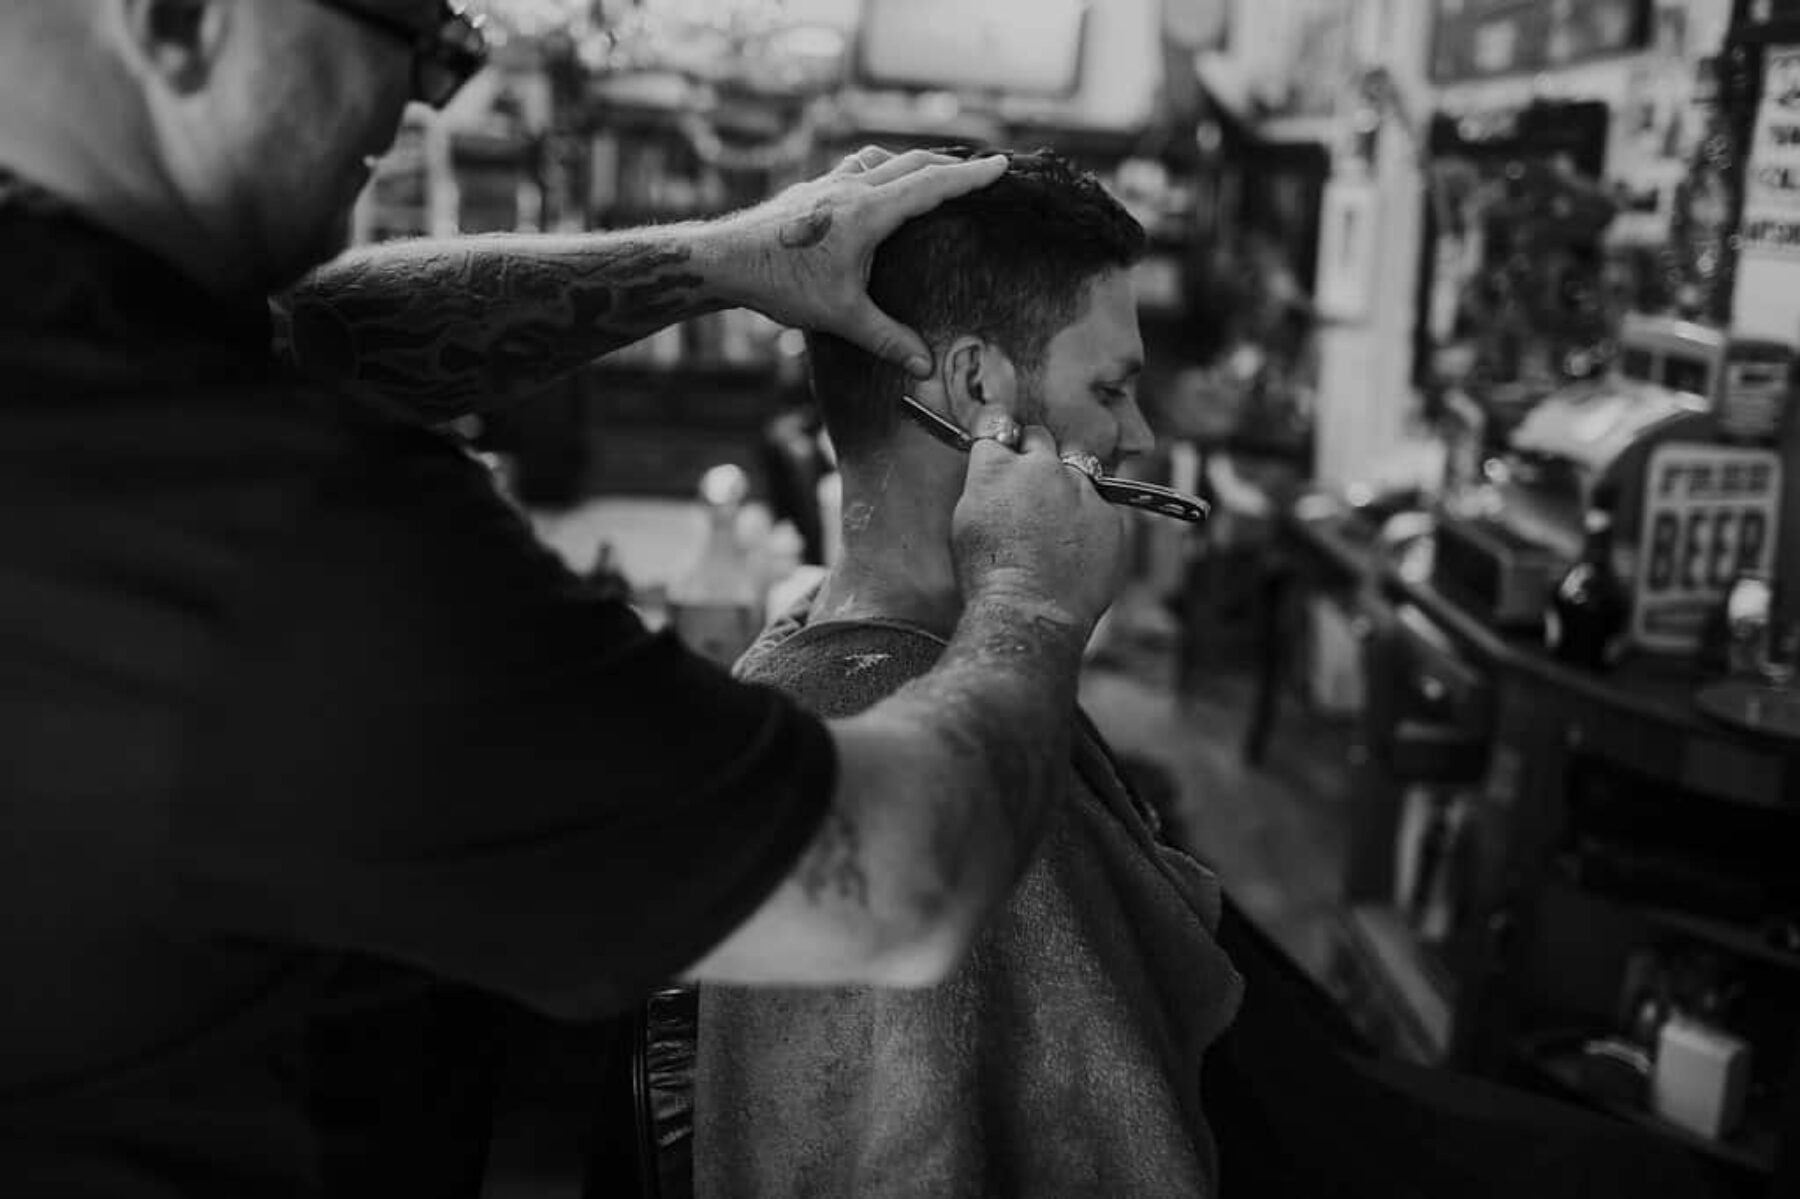 Perth barber - The Chop Shop